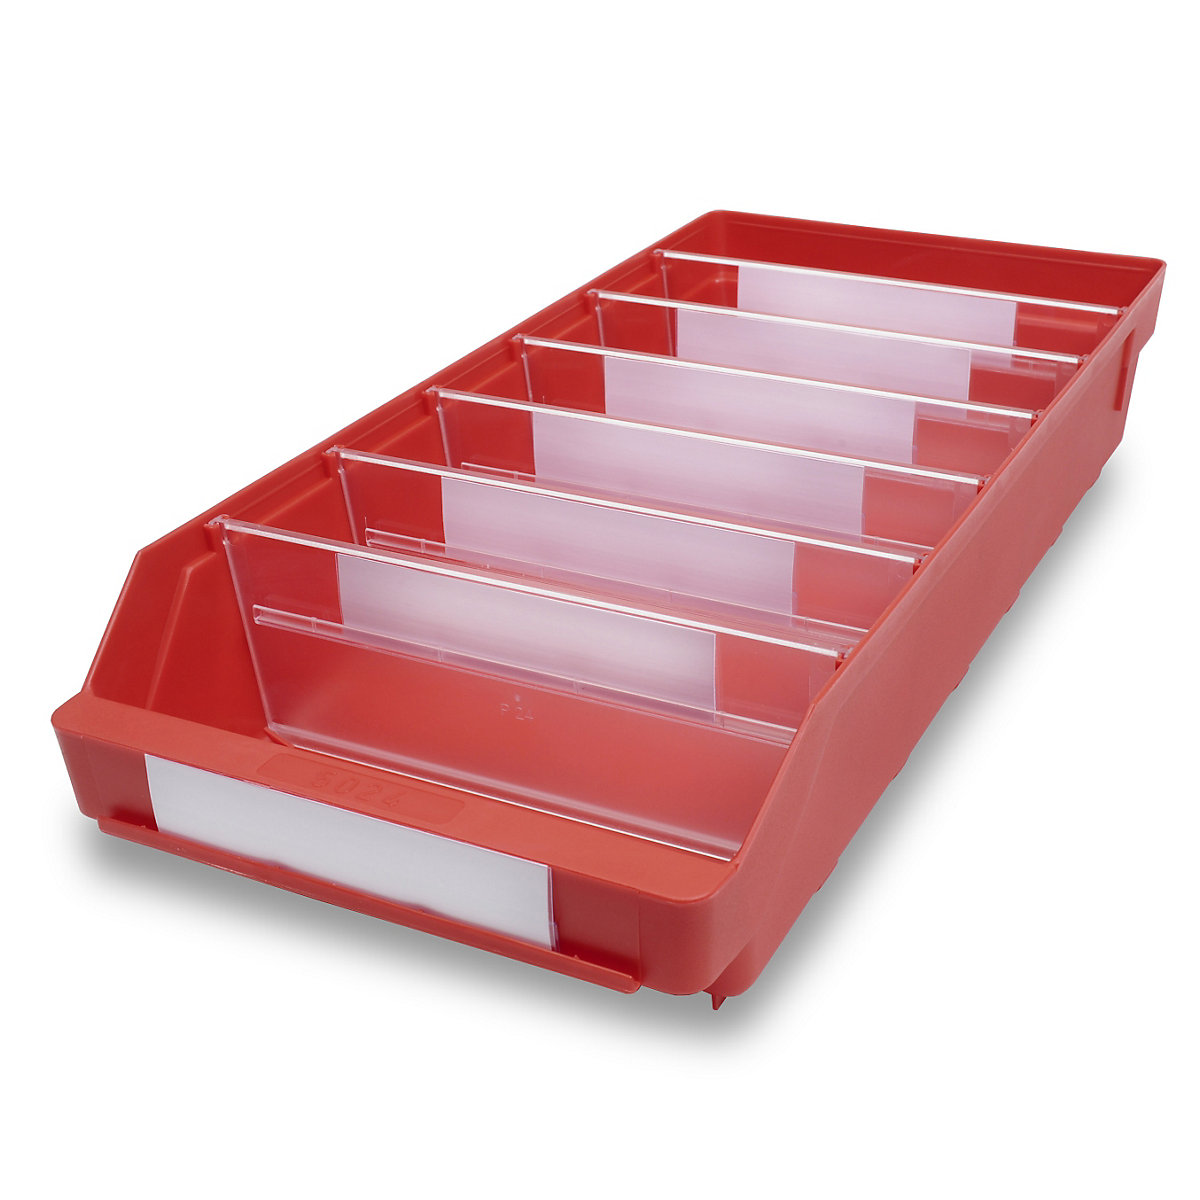 STEMO Regalkasten aus hochschlagfestem Polypropylen, rot, LxBxH 500 x 240 x 95 mm, VE 15 Stk